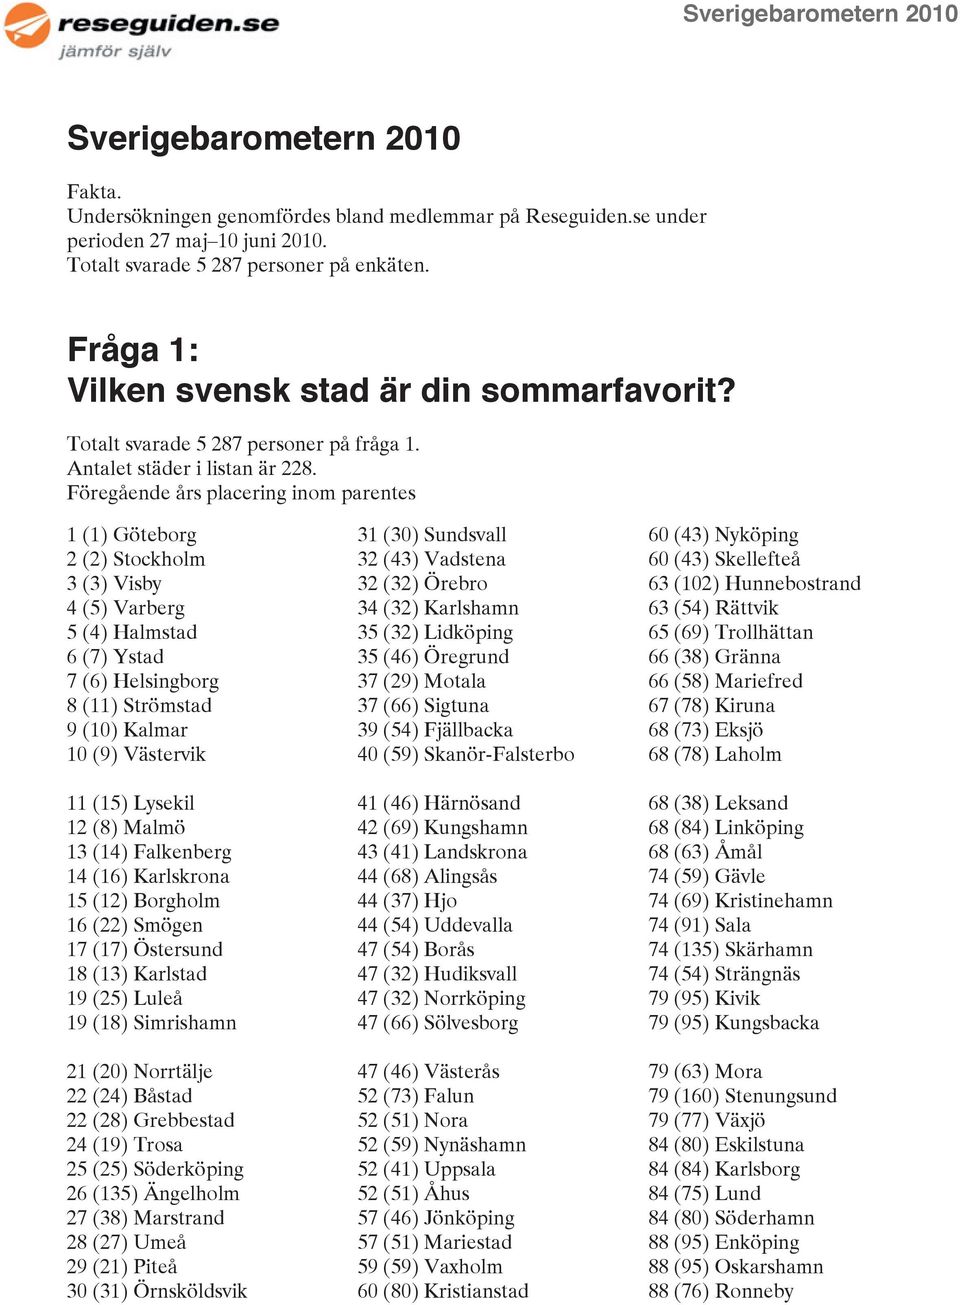 Föregående års placering inom parentes 1 (1) Göteborg 2 (2) Stockholm 3 (3) Visby 4 (5) Varberg 5 (4) Halmstad 6 (7) Ystad 7 (6) Helsingborg 8 (11) Strömstad 9 (10) Kalmar 10 (9) Västervik 11 (15)